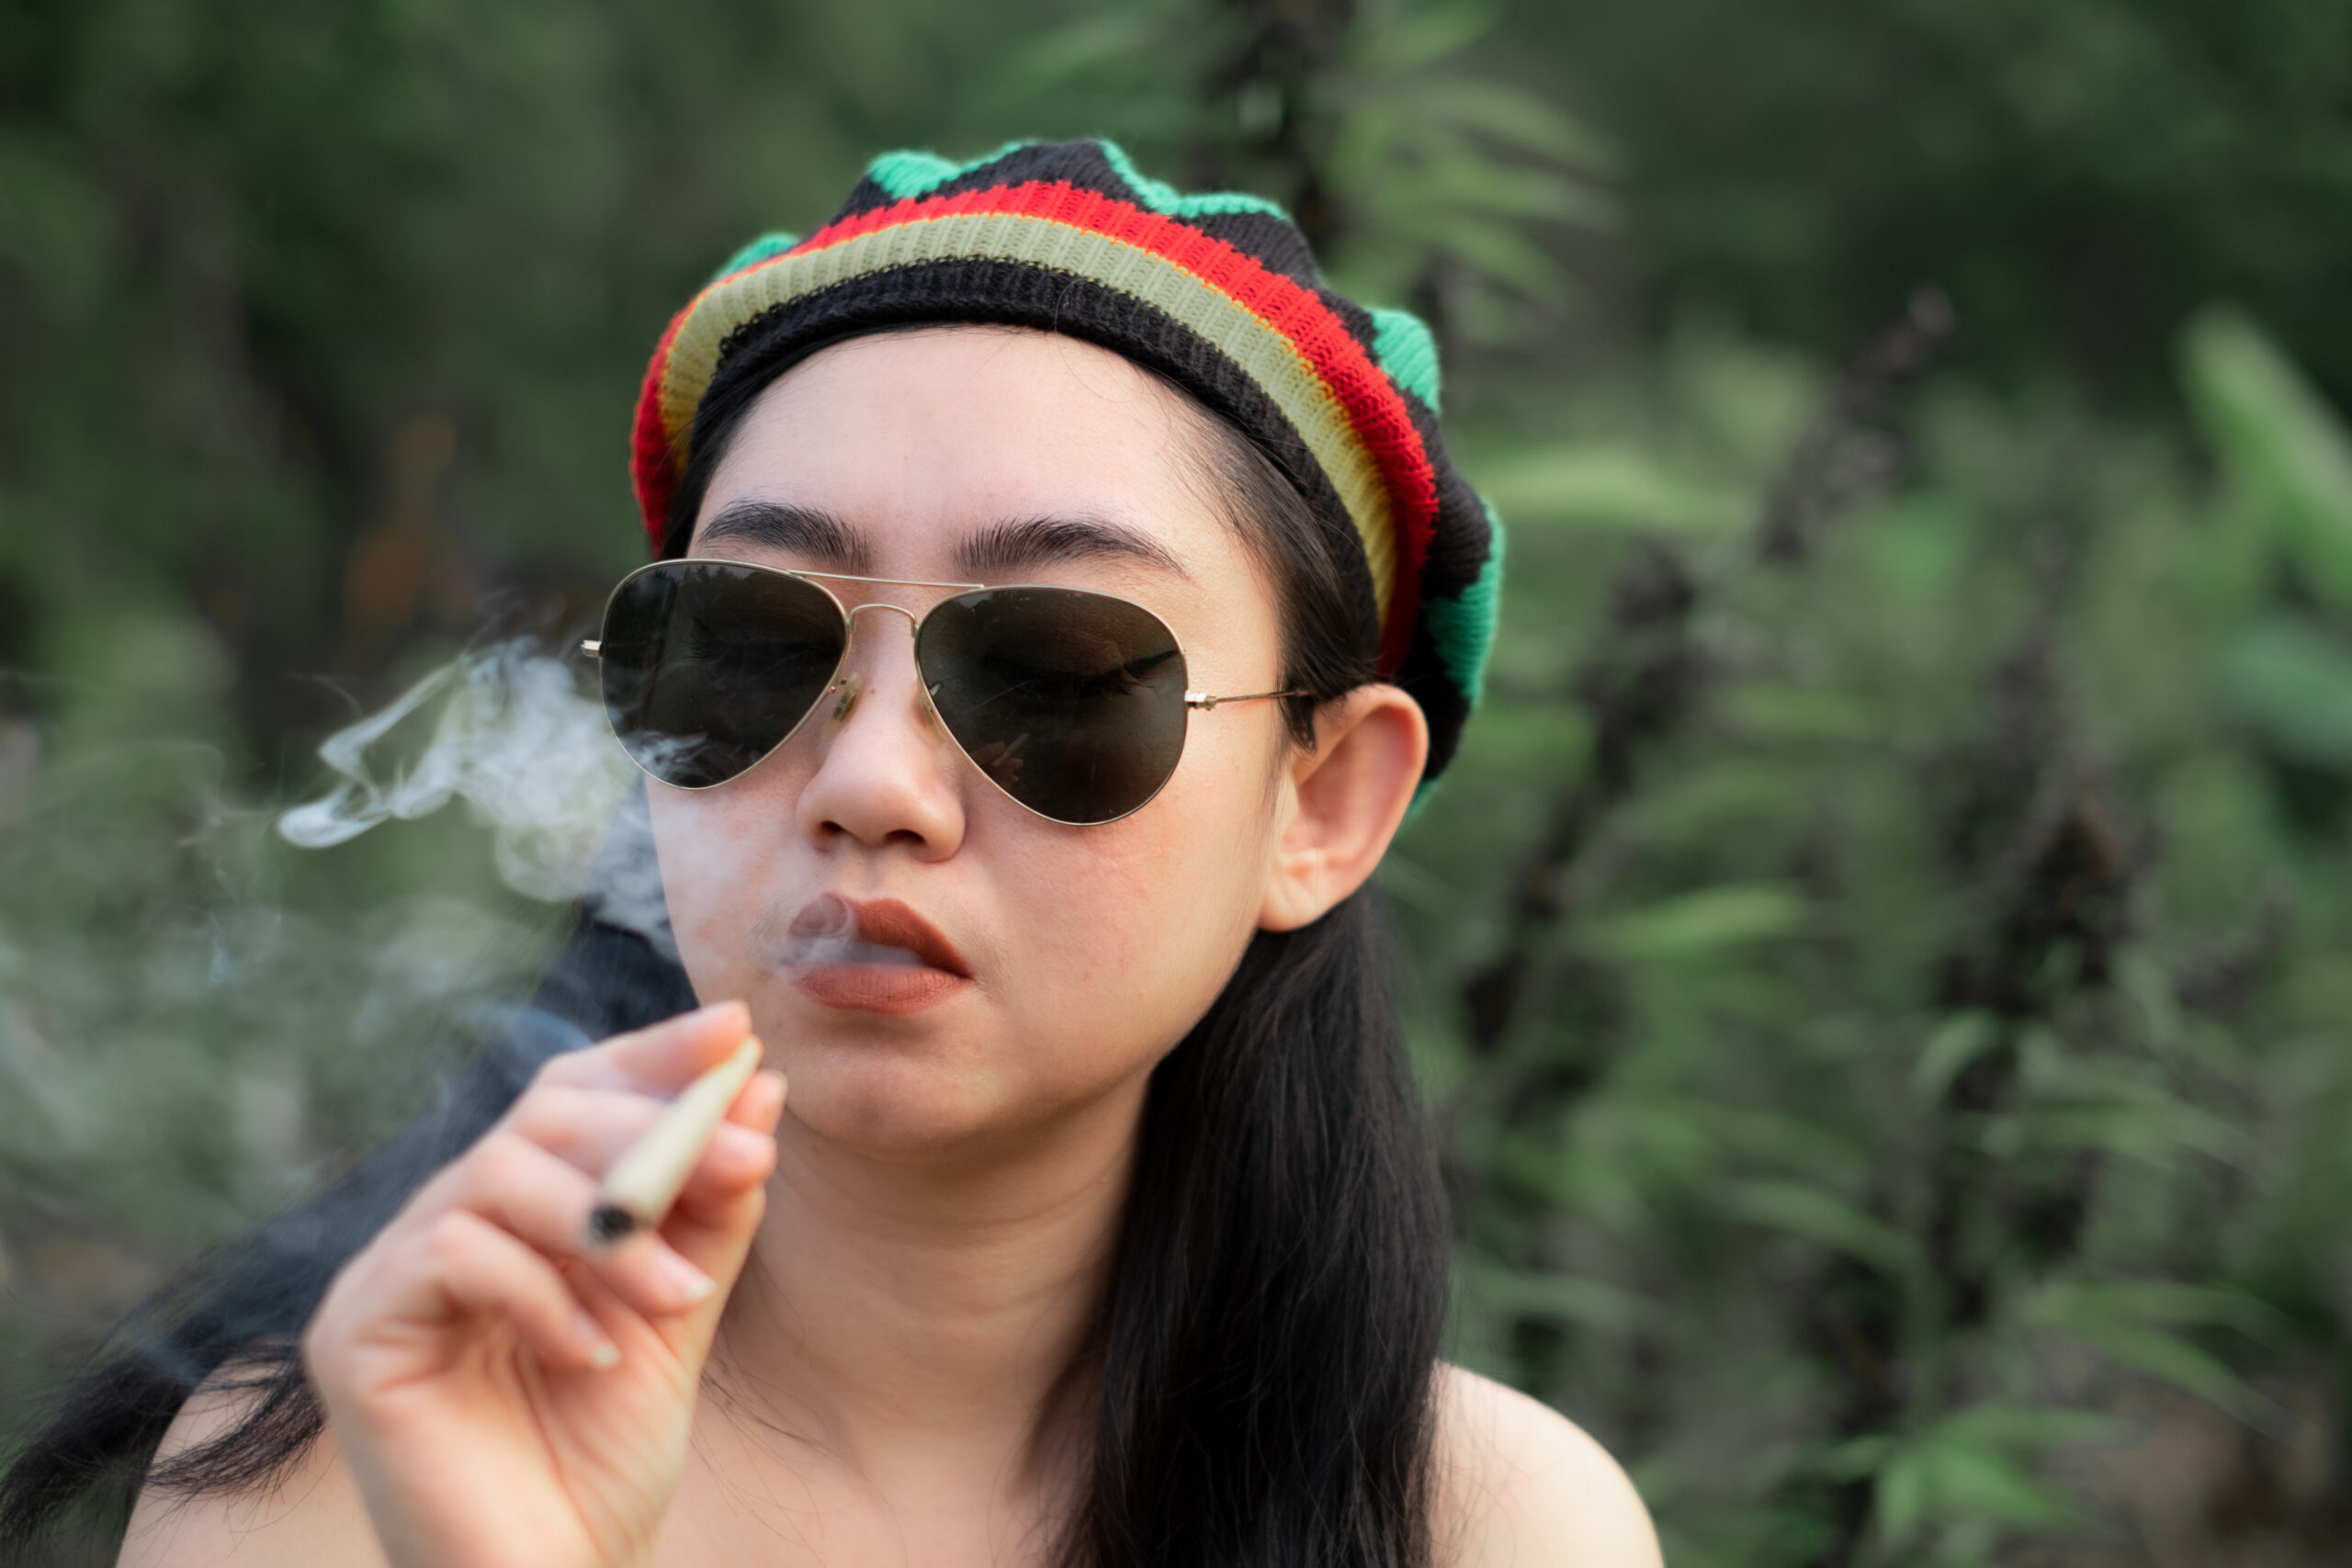 yong-asia-woman-smoking-marijuana-at-cannabis-tree